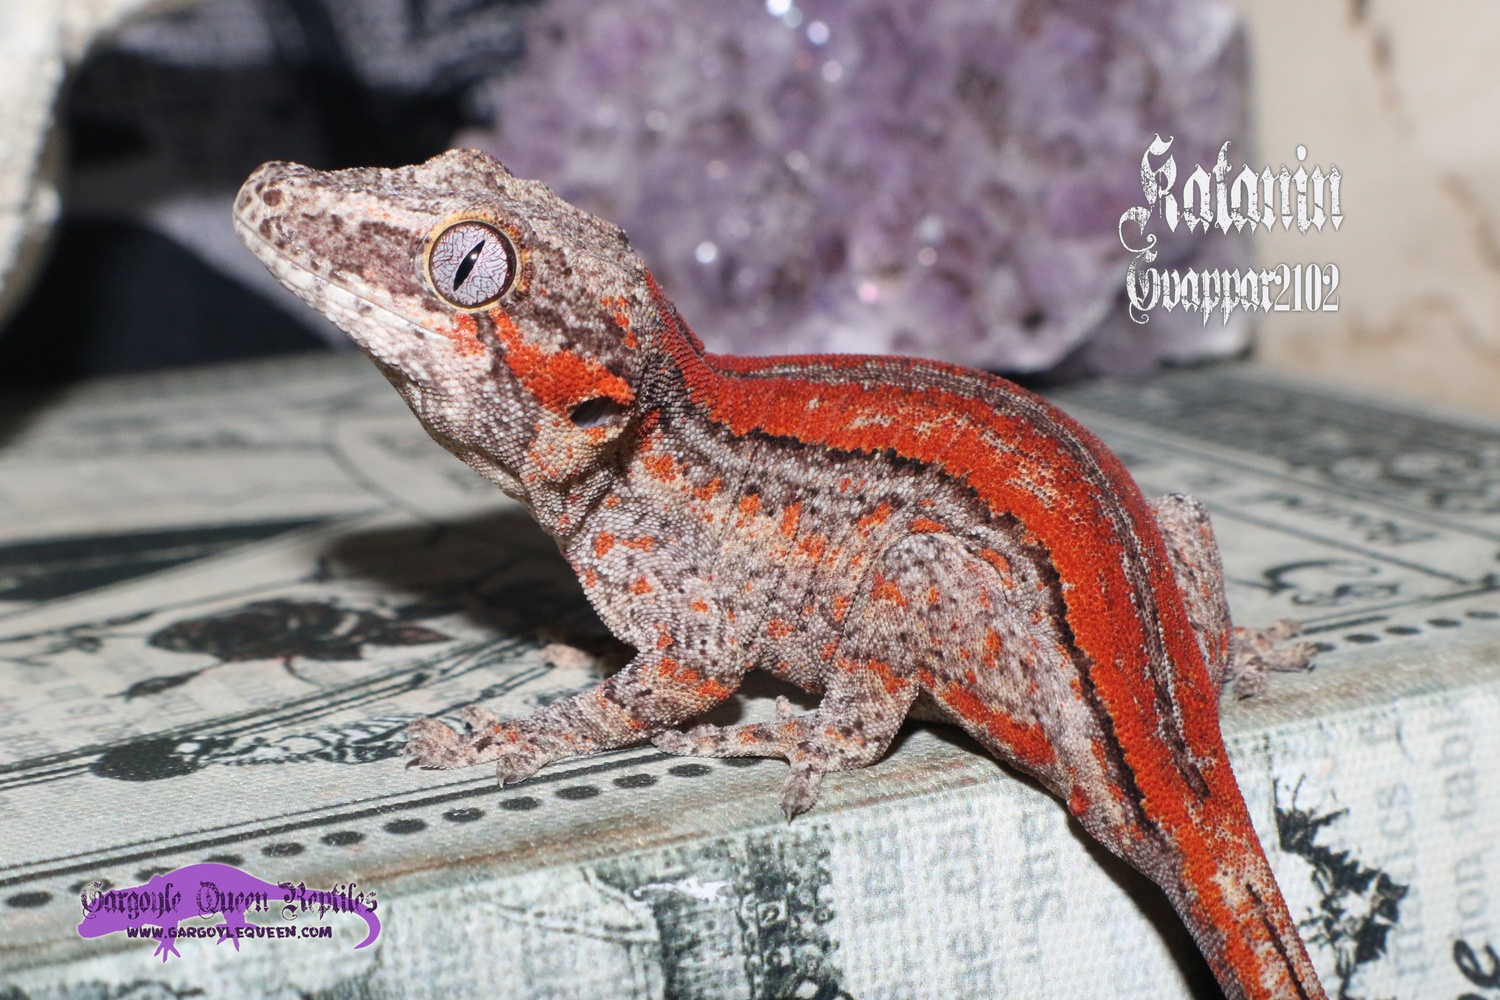 "Katanin" Red Stripe Gargoyle Gecko by Gargoyle Queen Reptiles